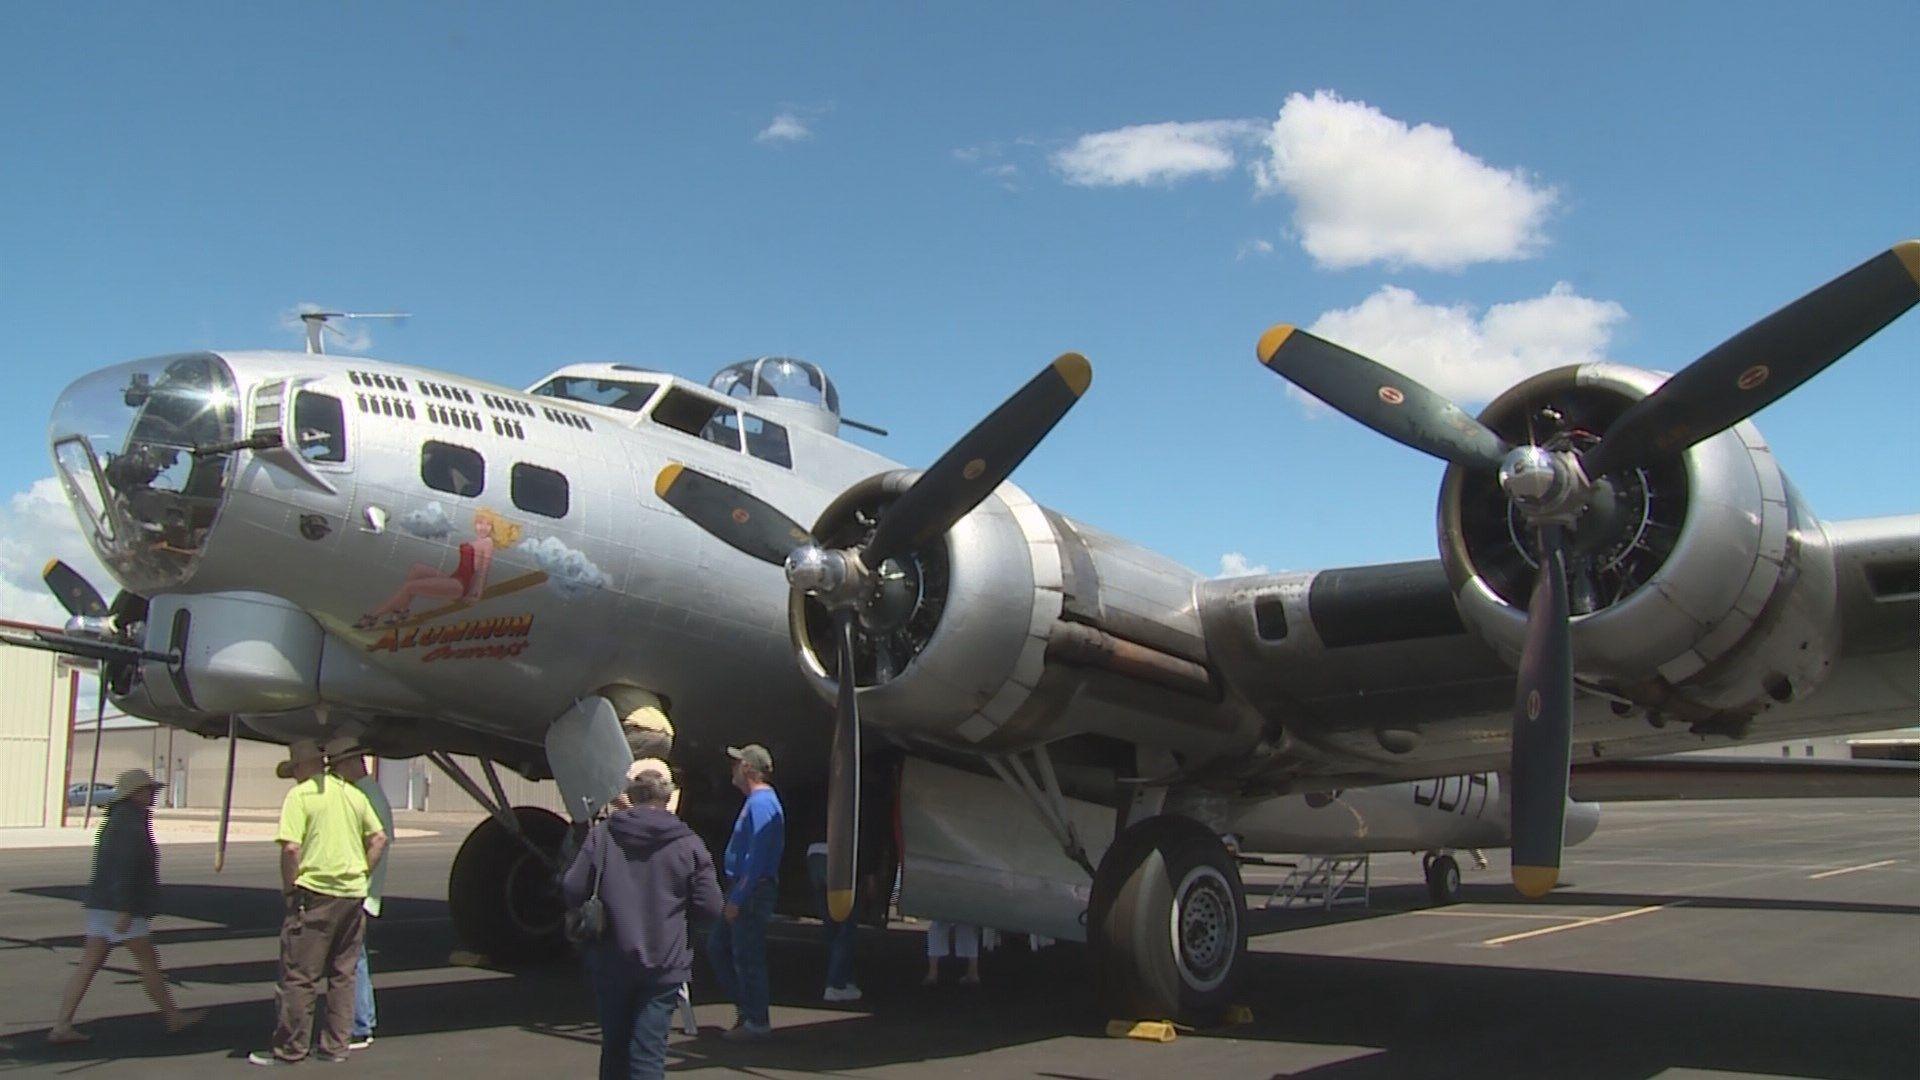 ktvb.com. Catch a flight in a World War II bomber this weekend